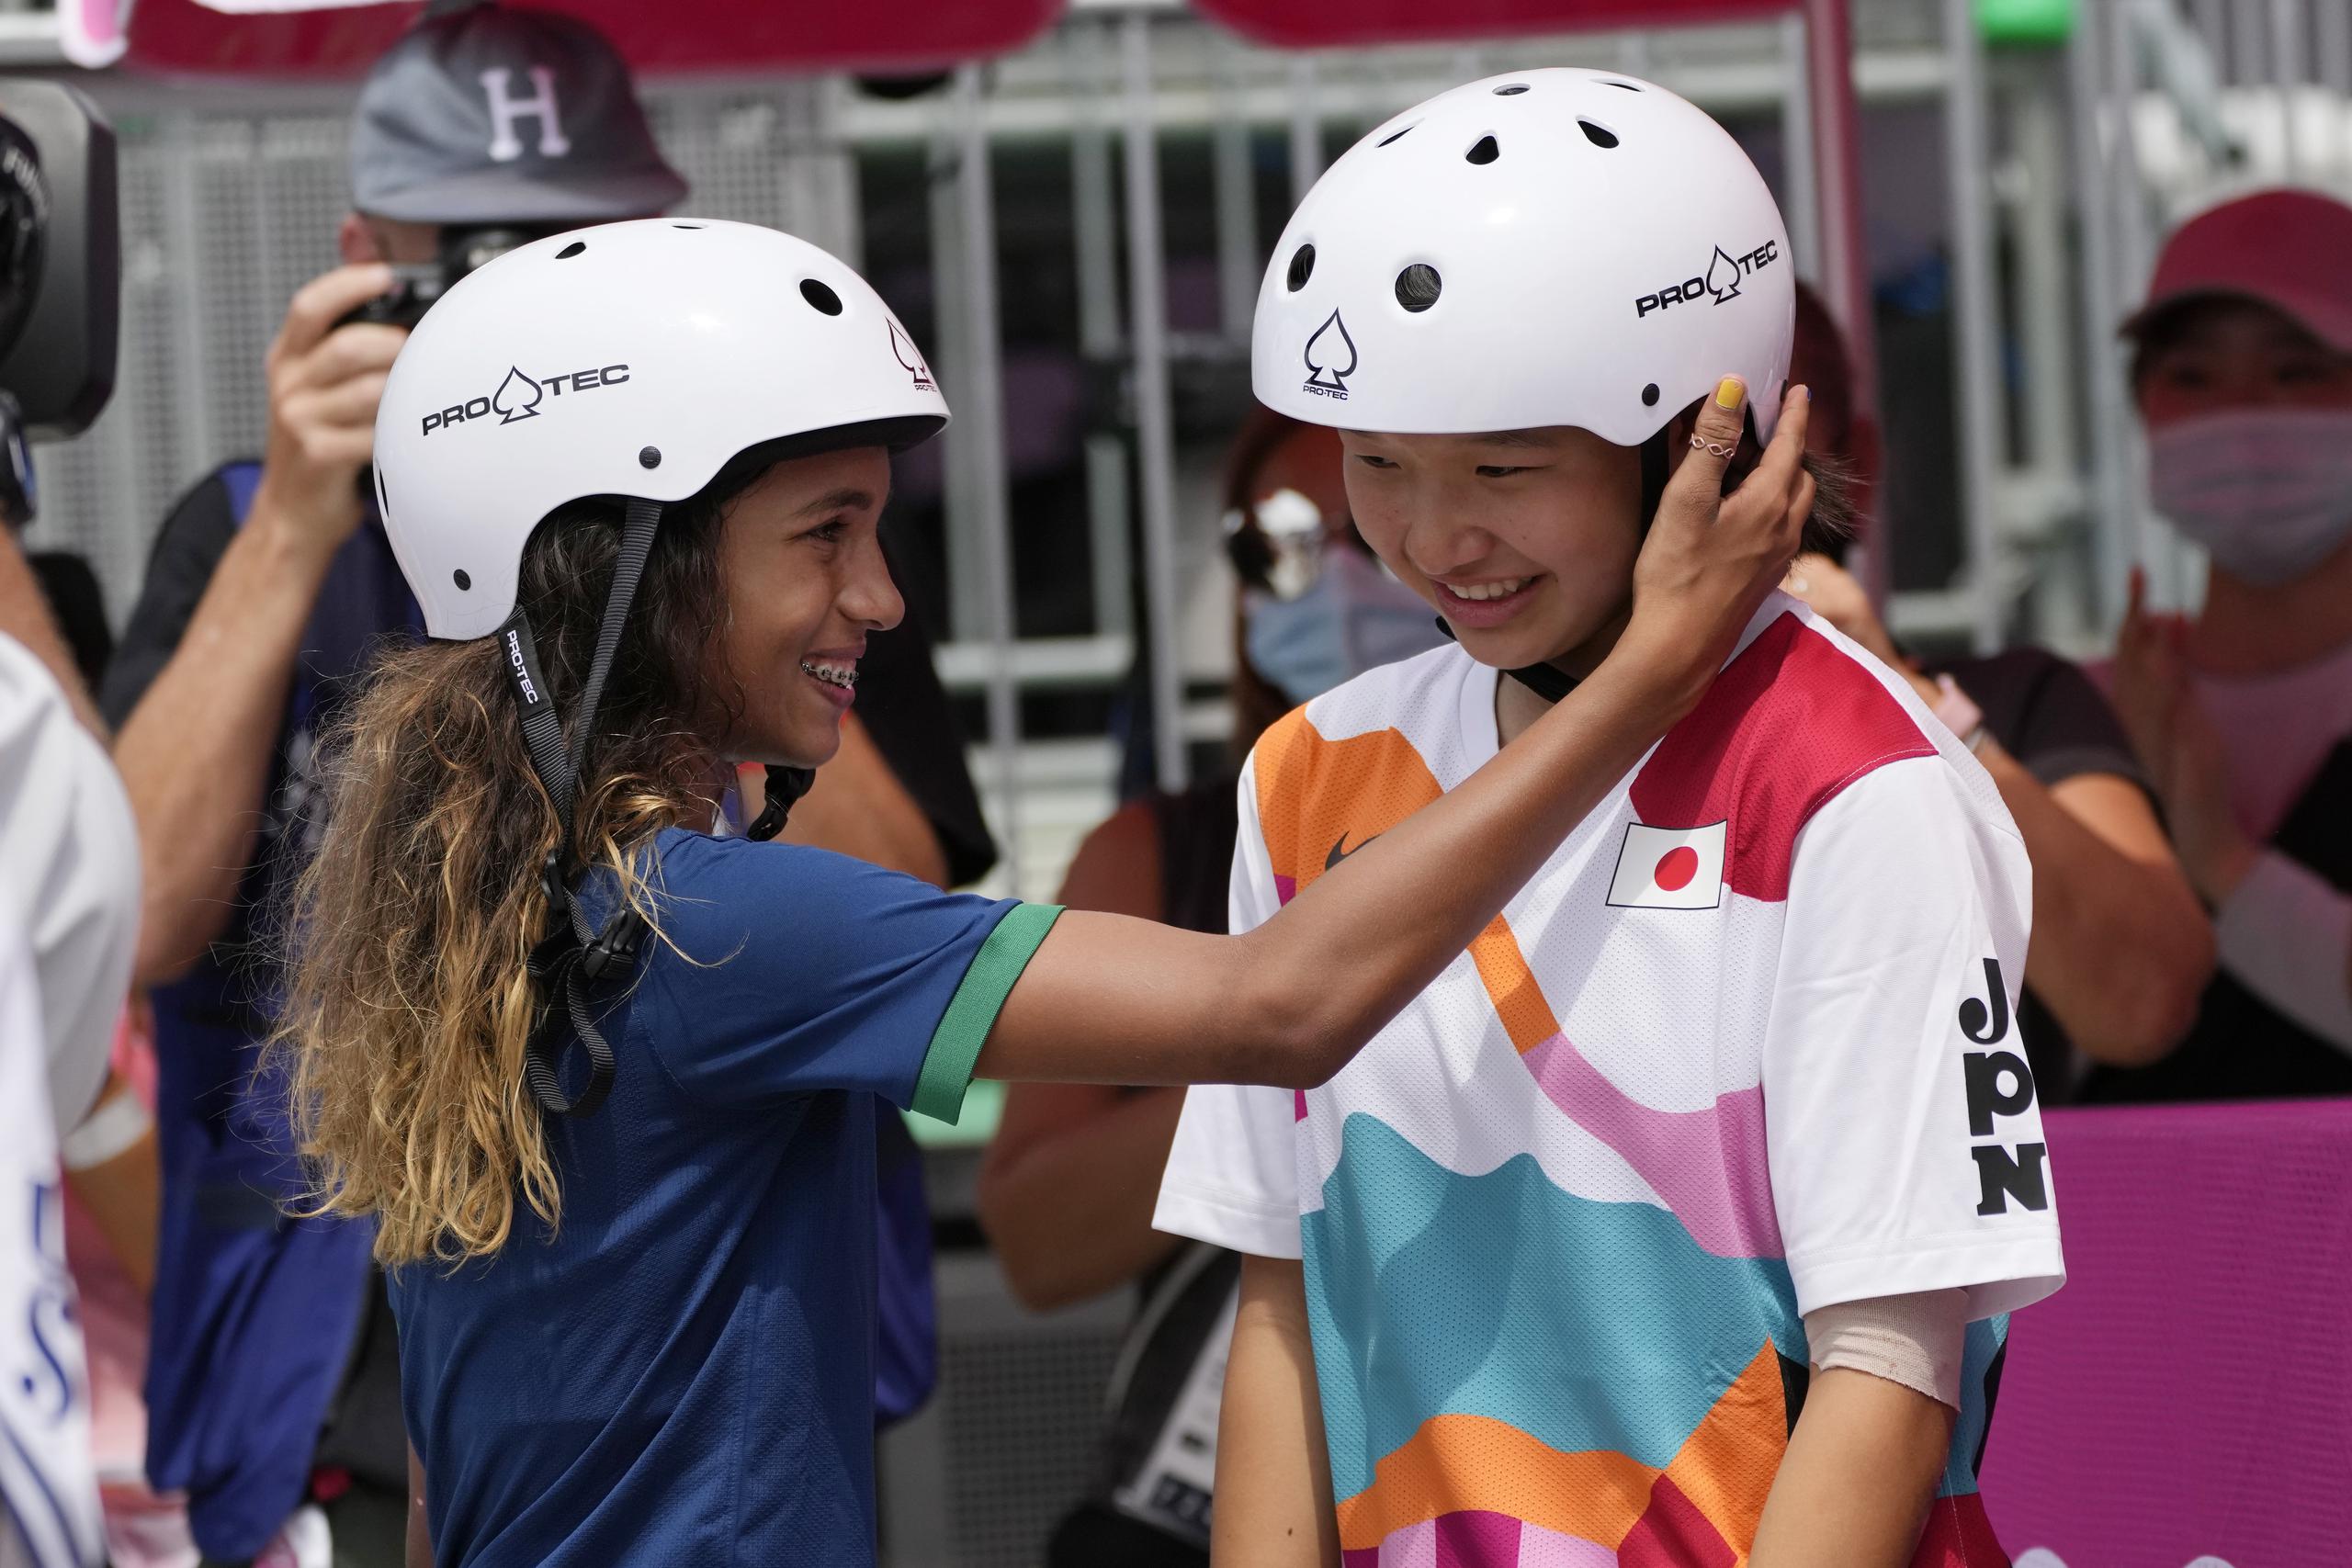 La brasileña Rayssa Leal, felicita a la japonesa Momiji Nishiya tras su triunfo dorado en la final del skateboarding femenino de los Juegos Olímpicos de Tokio 2020.